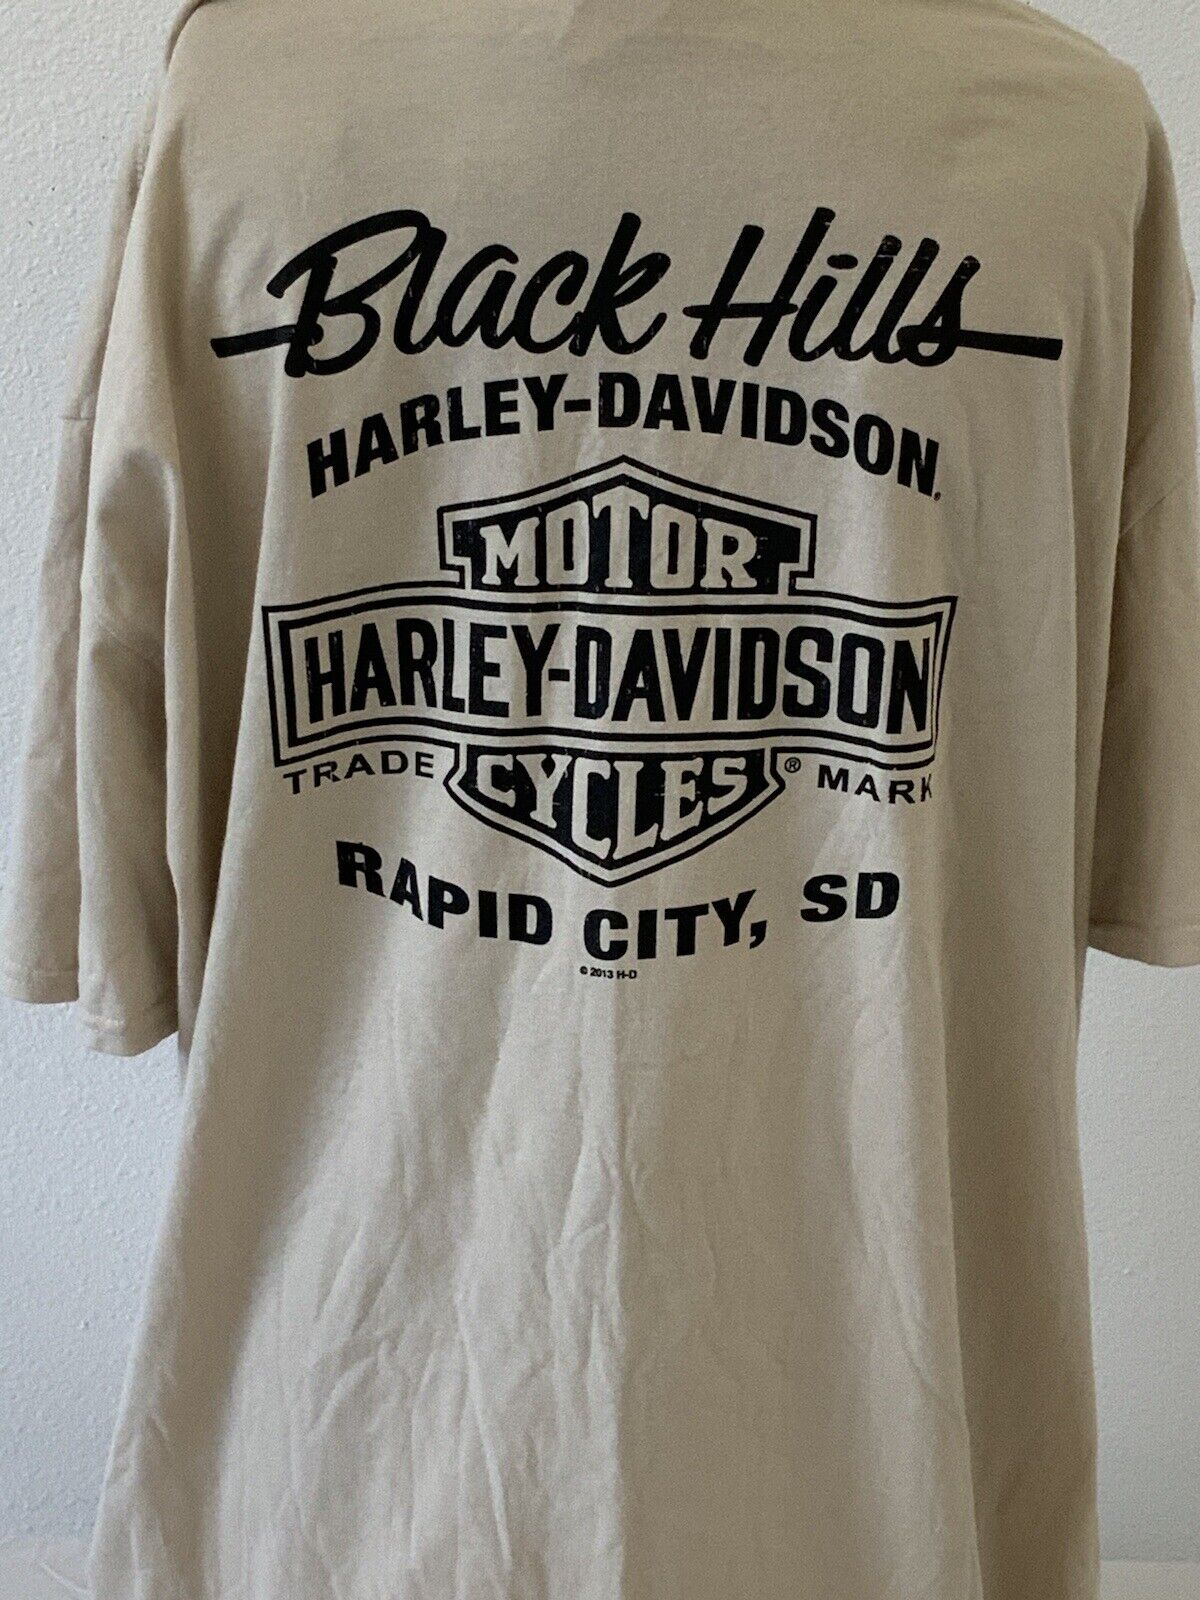 Men’s harley davidson short sleeve t-shirt 3XL Black Hills South Dakota